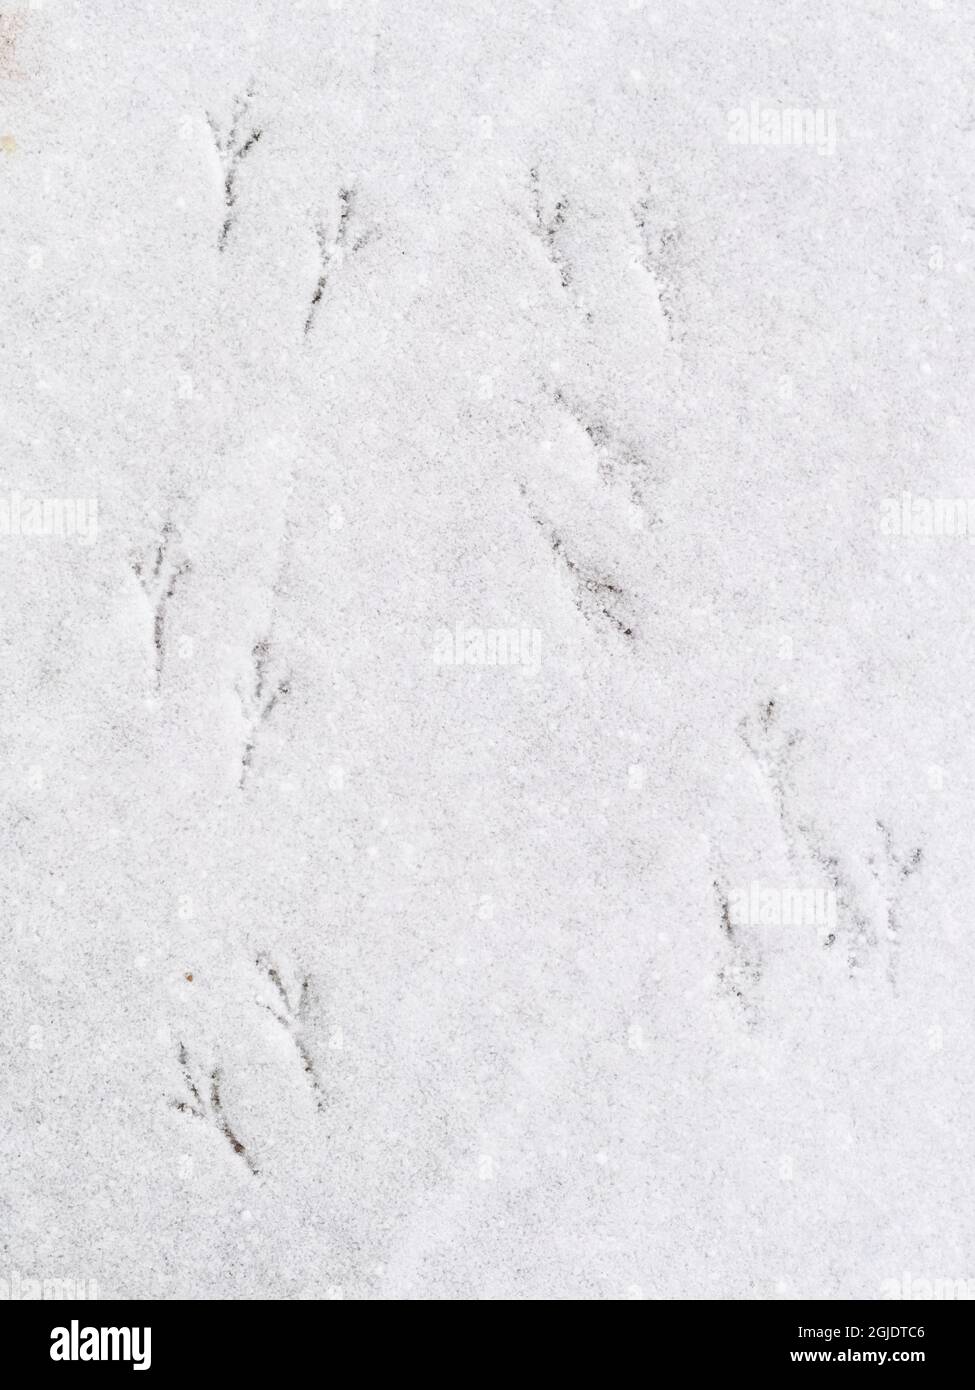 États-Unis, Indiana, Carmel. Empreintes d'oiseaux dans la neige. Credit AS: Wendy Kaveney / Galerie Jaynes / DanitaDelimont.com Banque D'Images